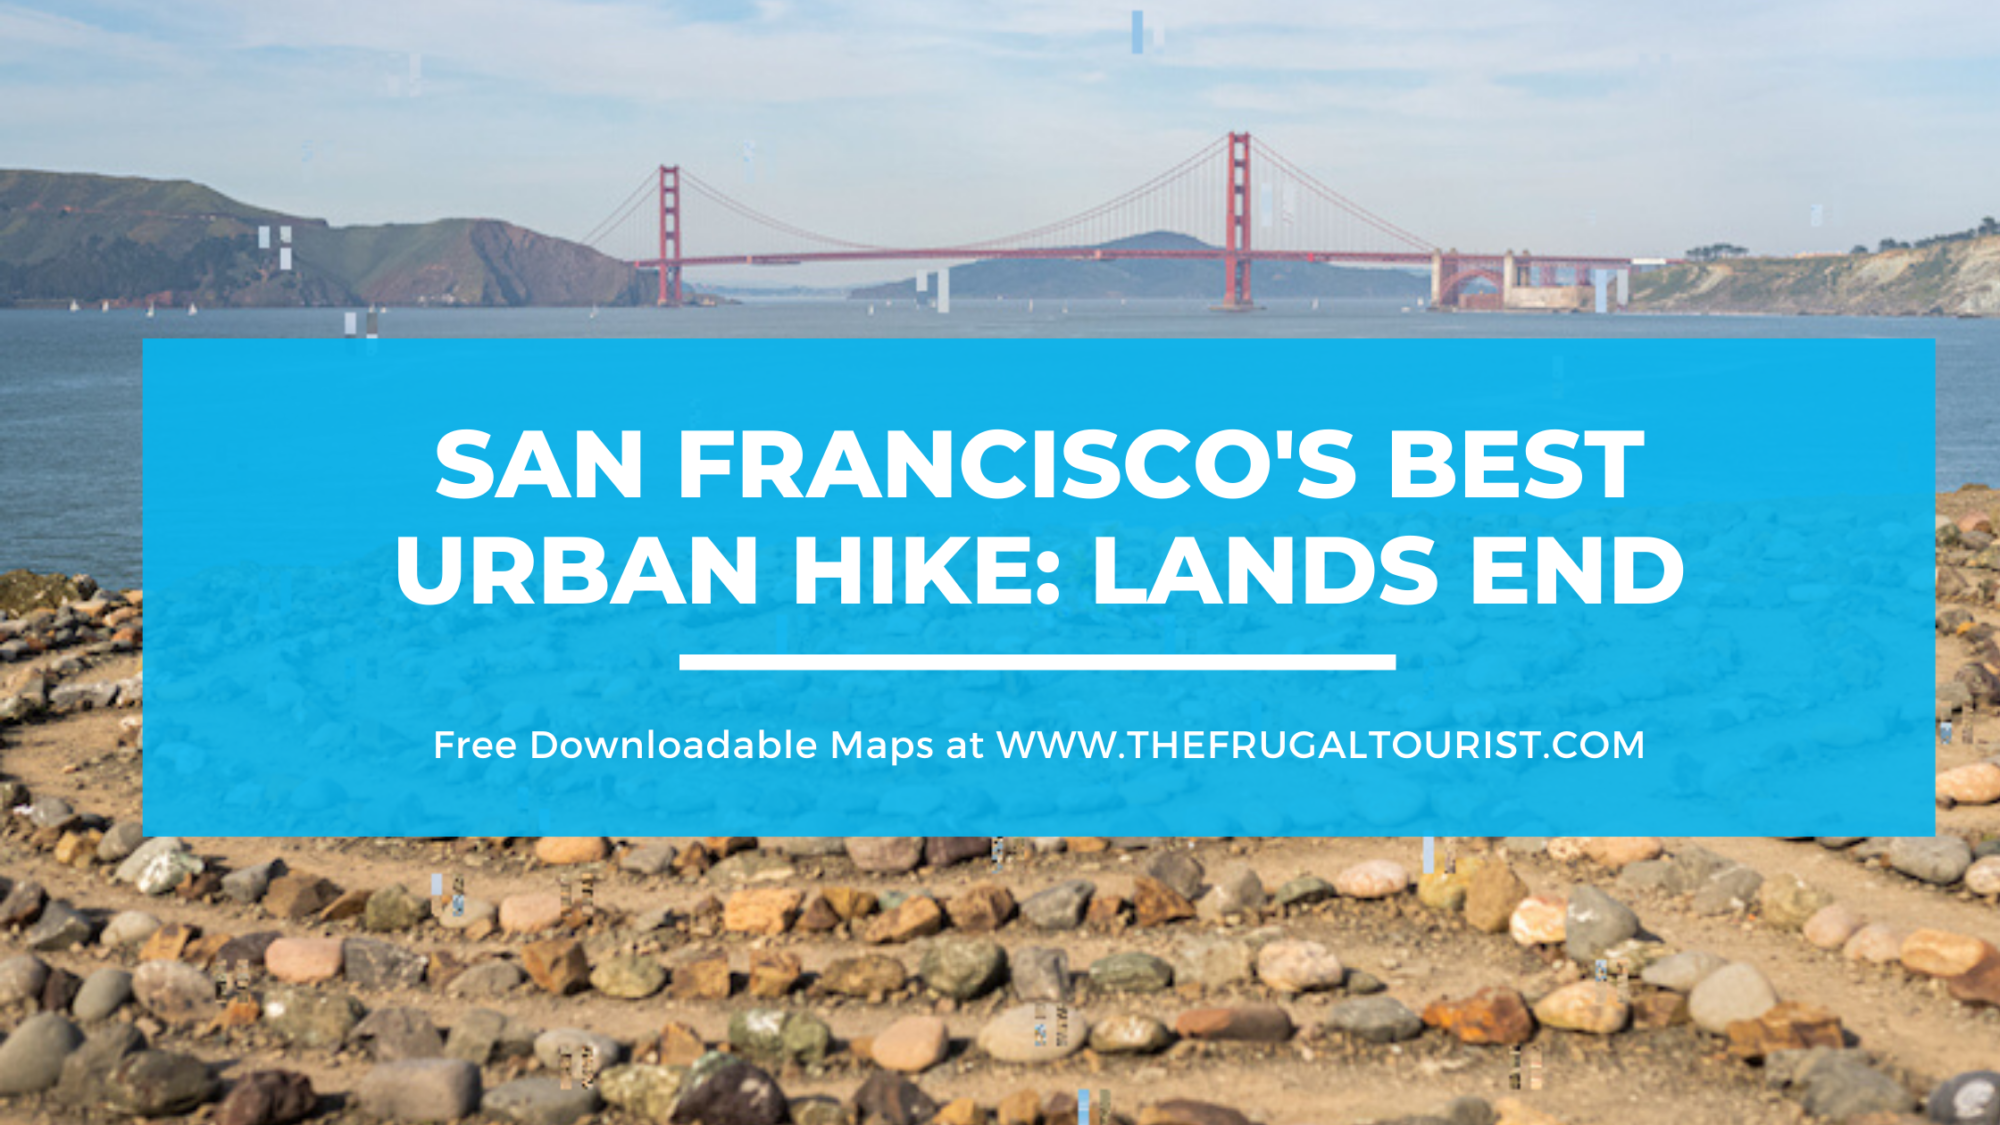 San Francisco’s Best Urban Hike: Lands End